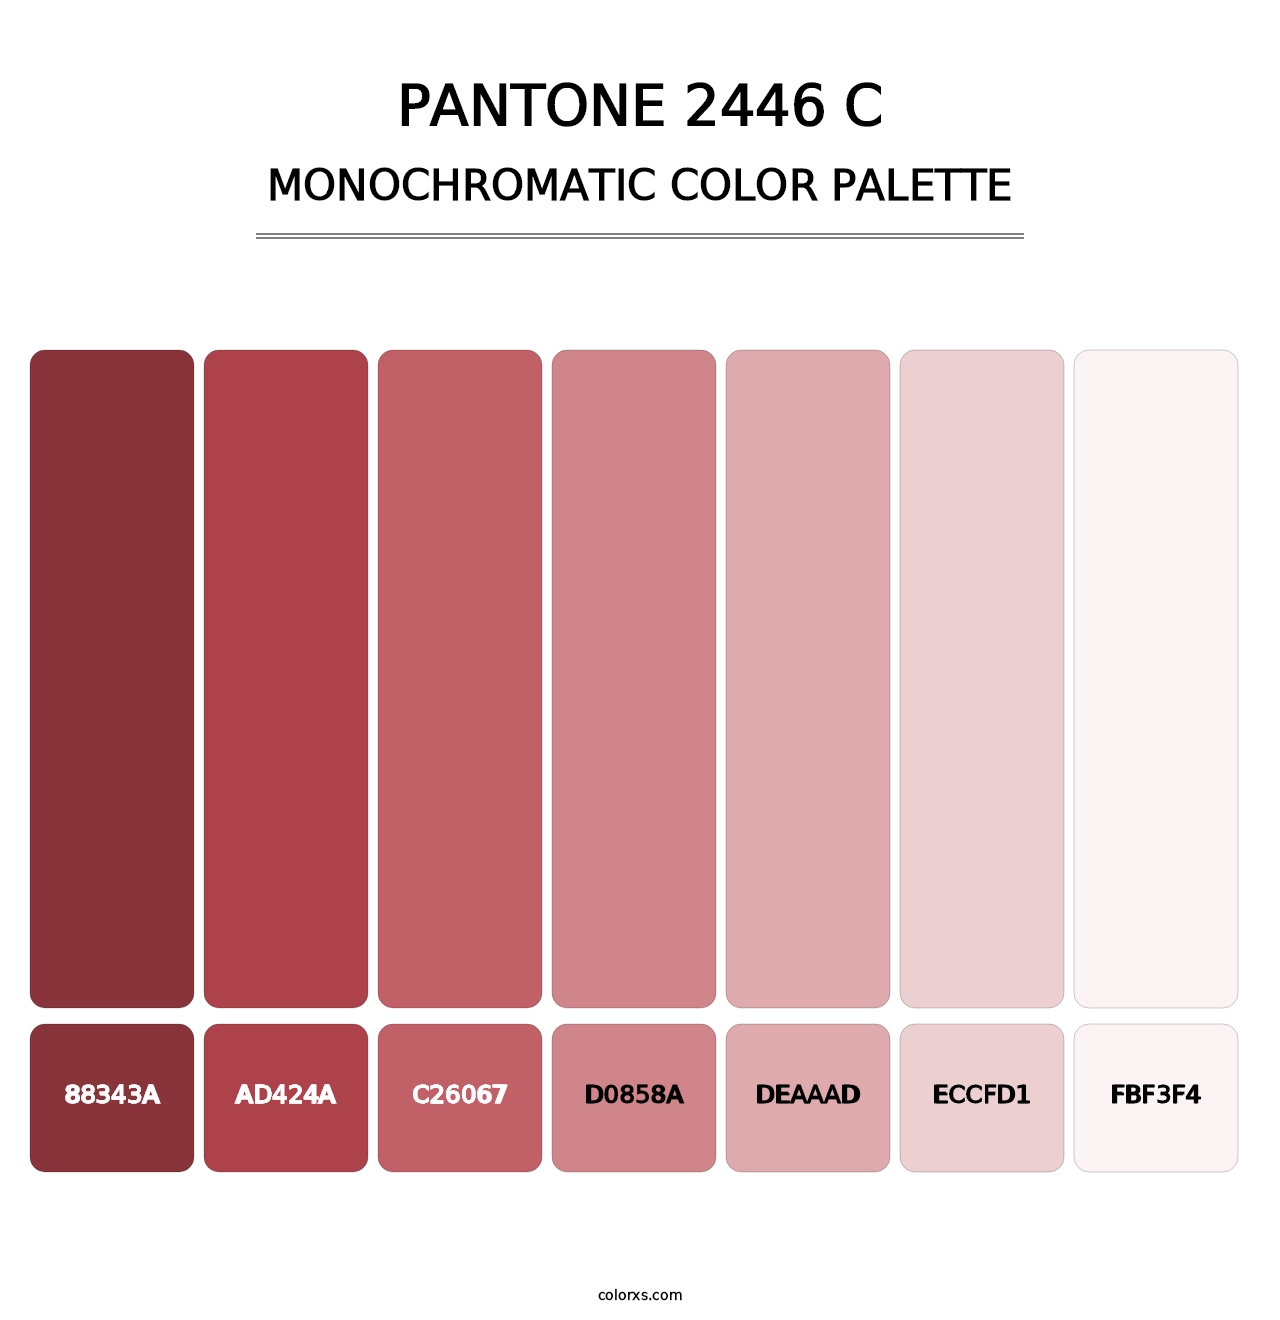 PANTONE 2446 C - Monochromatic Color Palette